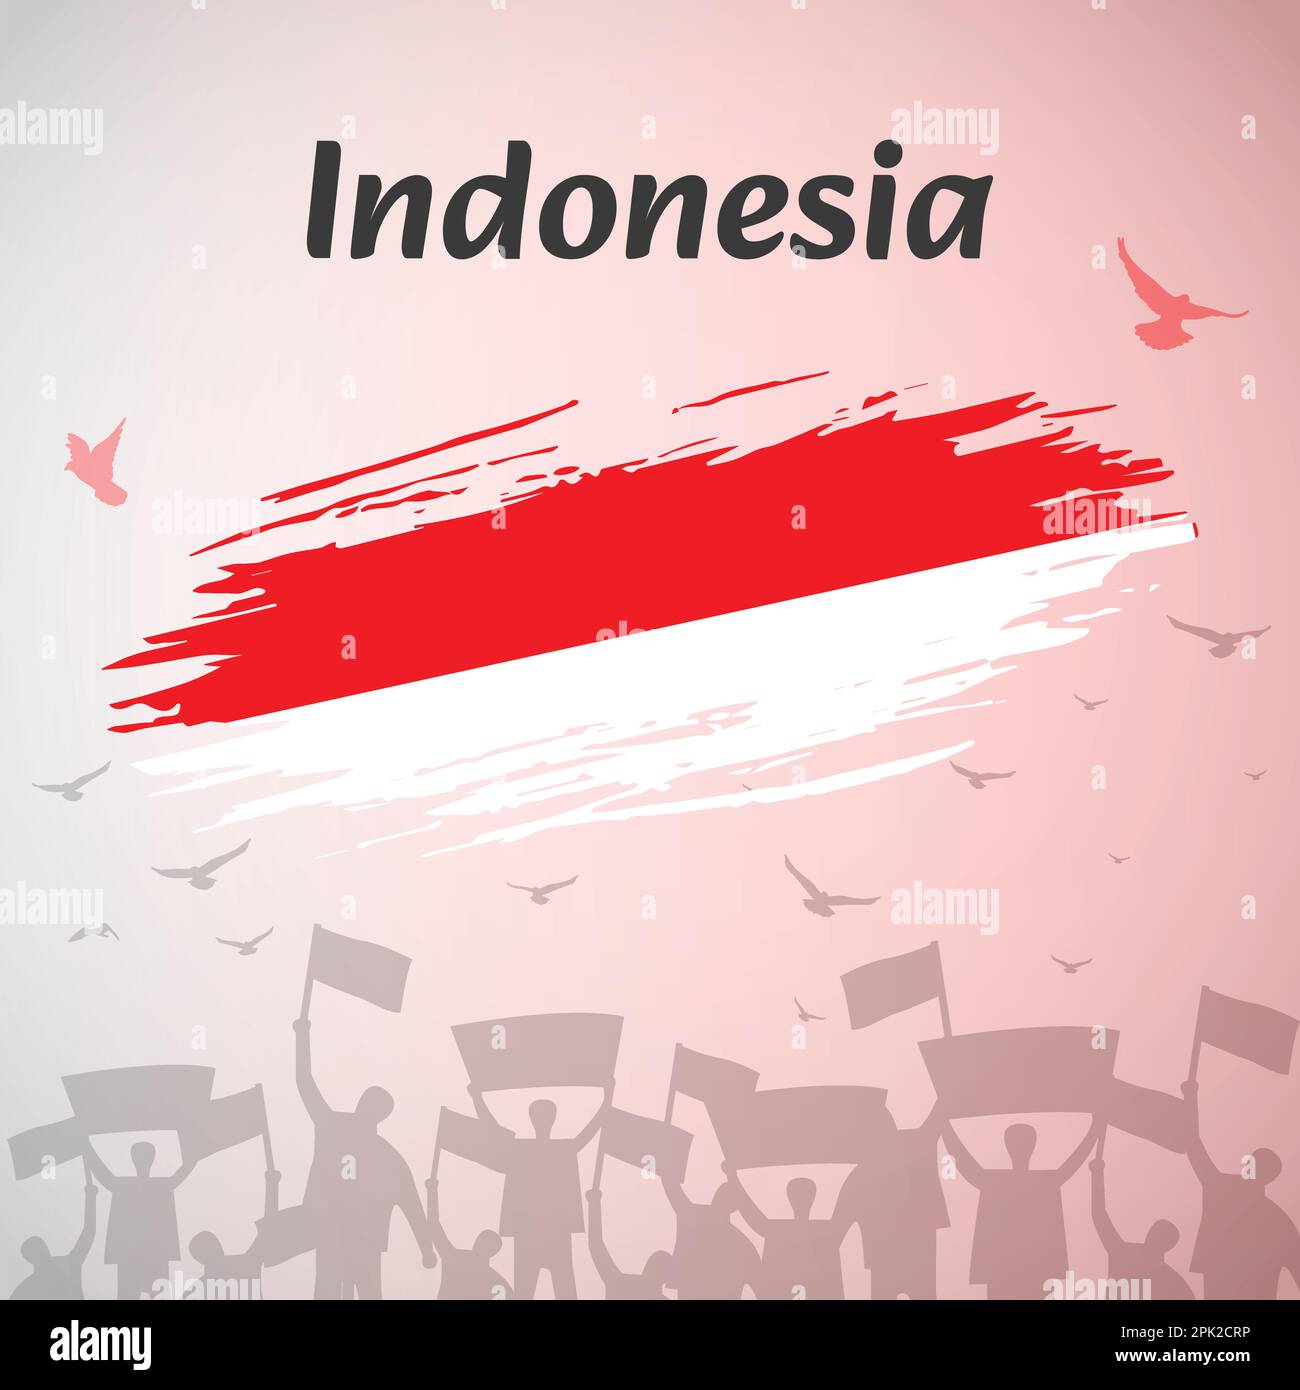 Indonésie National Day Celebration Design. Parfait pour le jour de l'indépendance, le jour des héros. Illustration vectorielle pour les médias sociaux, bannières, cartes de vœux. Illustration de Vecteur